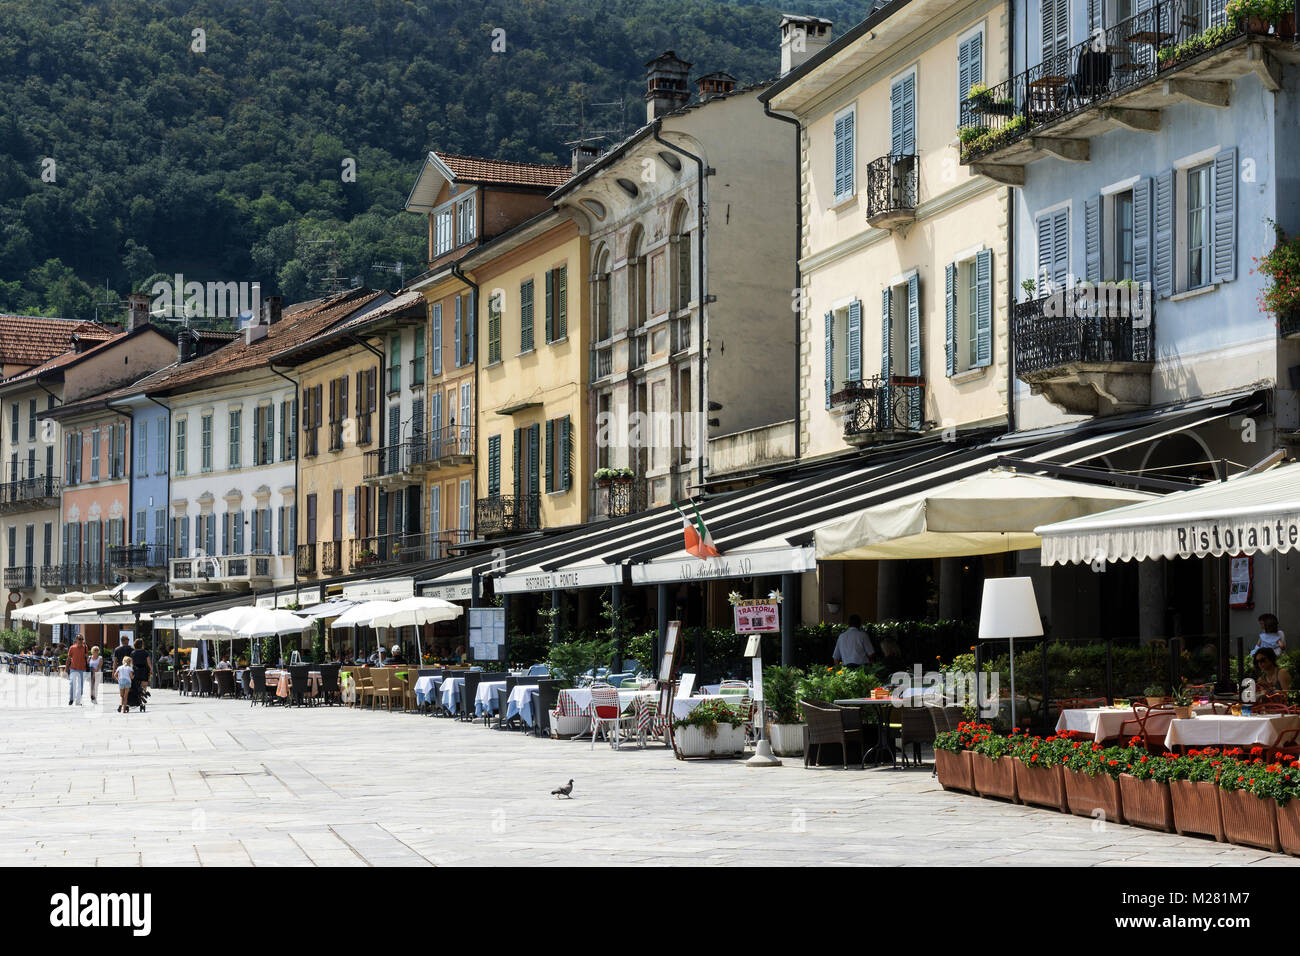 Case colorate e ristoranti sul lungomare, il centro storico di Cannobio sul Lago Maggiore, Verbano-Cusio-Ossola Provincia Foto Stock